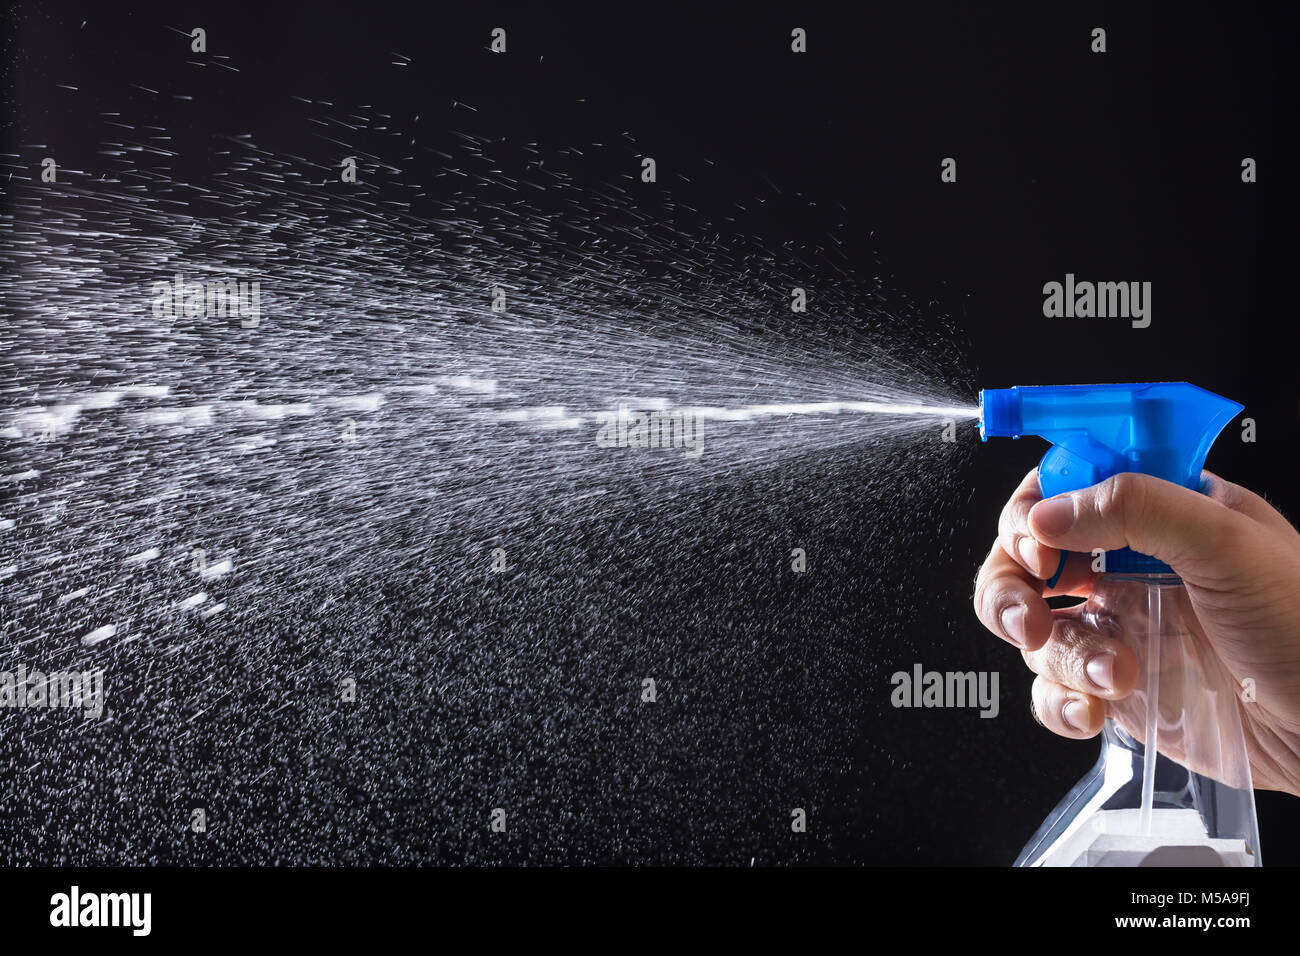 Mano humana rociado de agua con atomizador sobre fondo negro Foto de stock